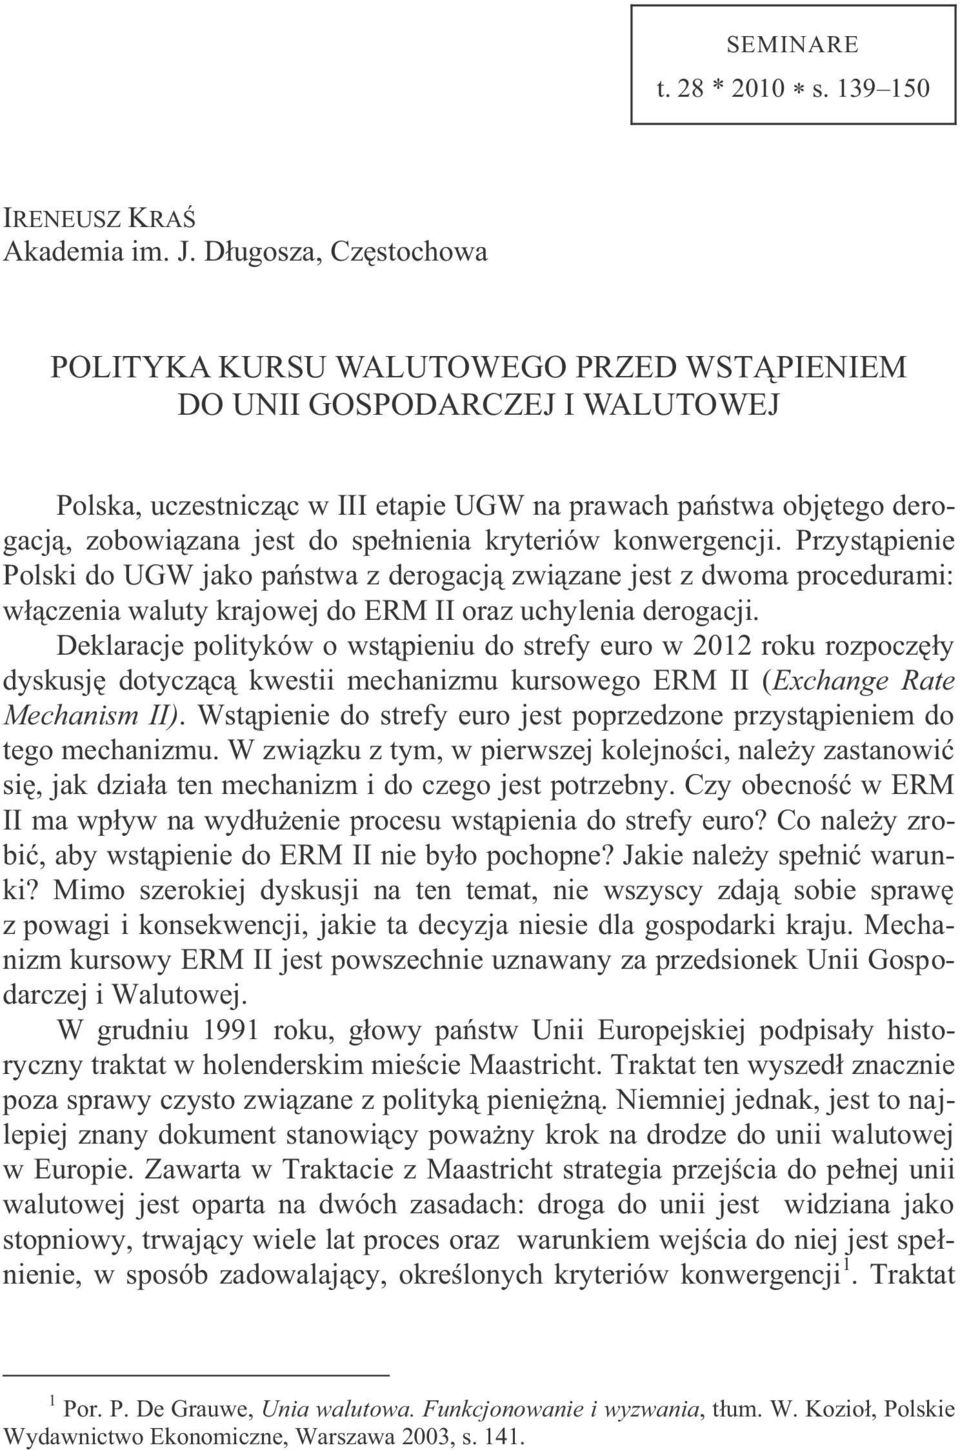 spełnienia kryteriów konwergencji. Przystąpienie Polski do UGW jako państwa z derogacją związane jest z dwoma procedurami: włączenia waluty krajowej do ERM II oraz uchylenia derogacji.